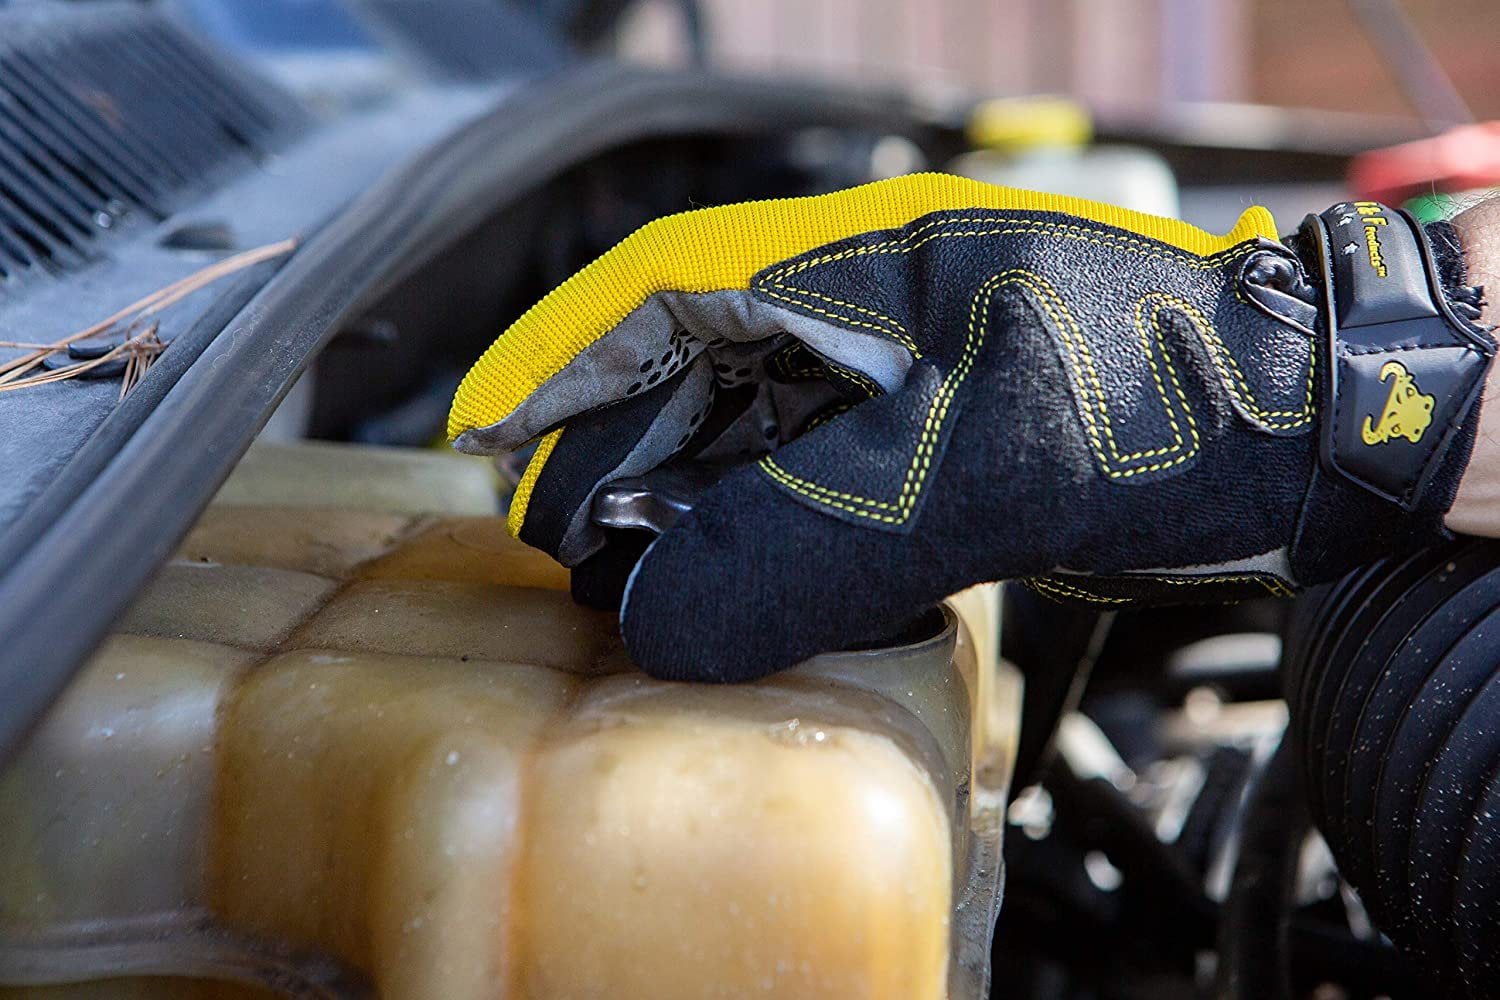 G & F 1089L Hyper Grip Non-Slip High-Performance Mechanic Work Gloves Large Driving Gloves